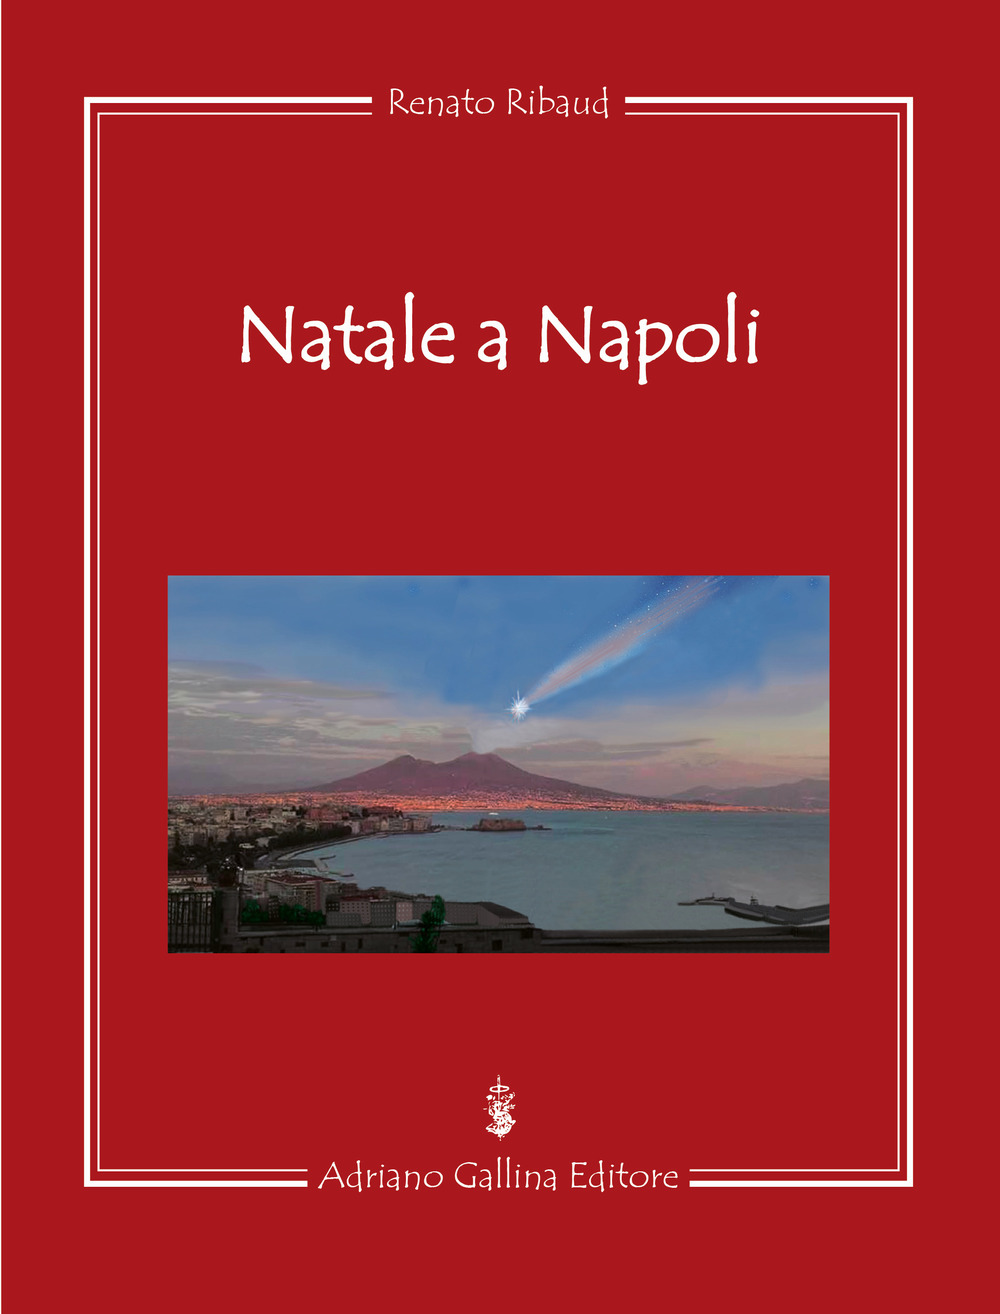 Libri Renato Ribaud - Natale A Napoli NUOVO SIGILLATO, EDIZIONE DEL 15/11/2017 SUBITO DISPONIBILE